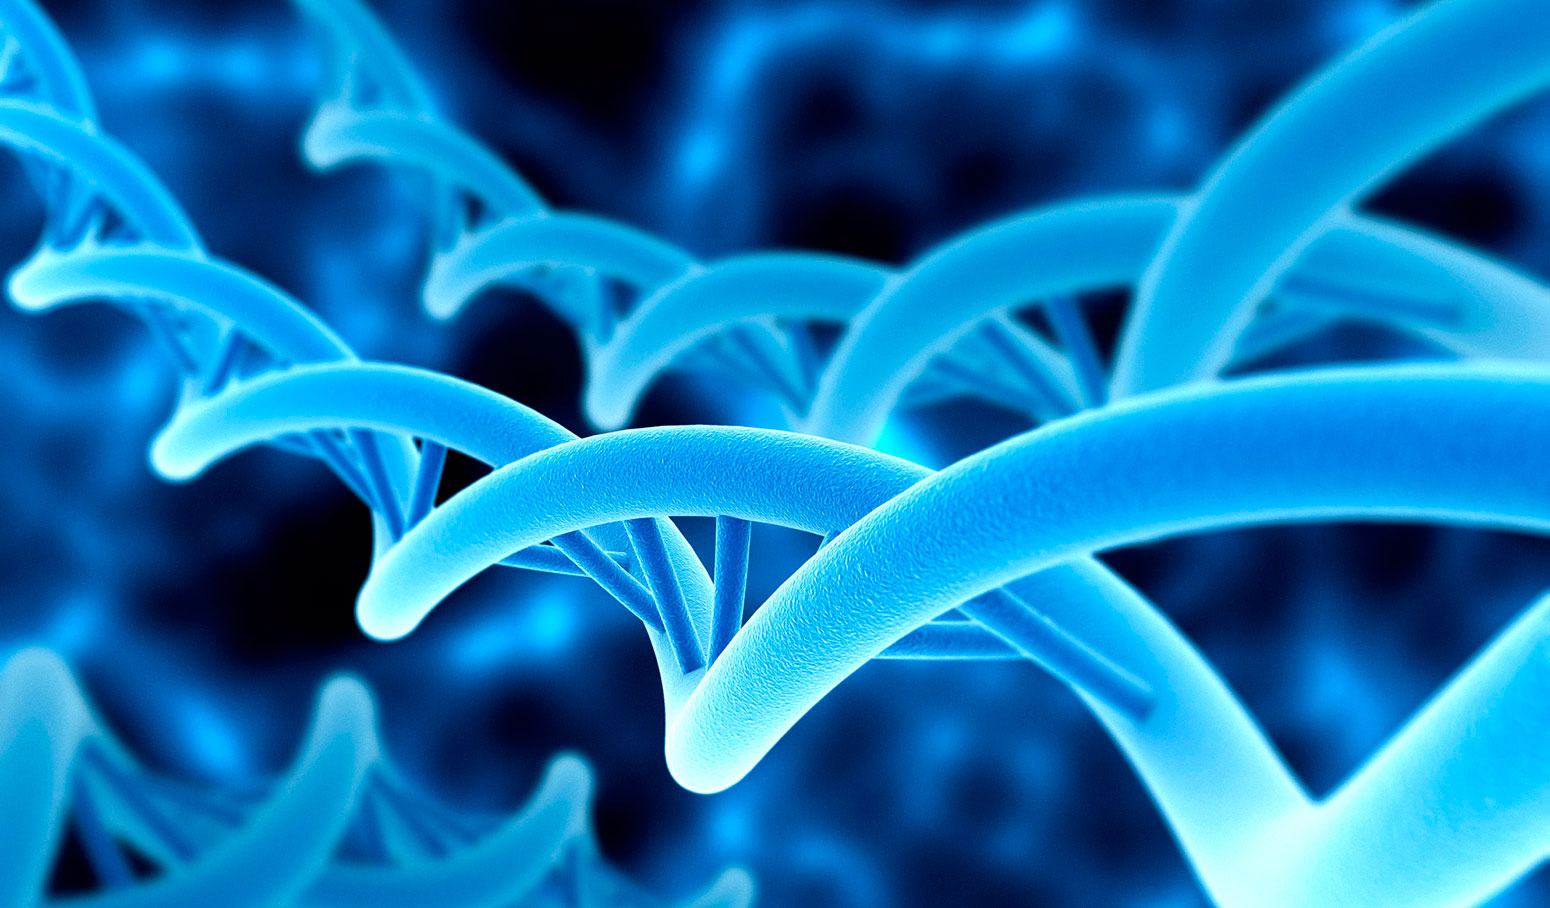 Científicos españoles descubren 600 genes nuevos en humanos